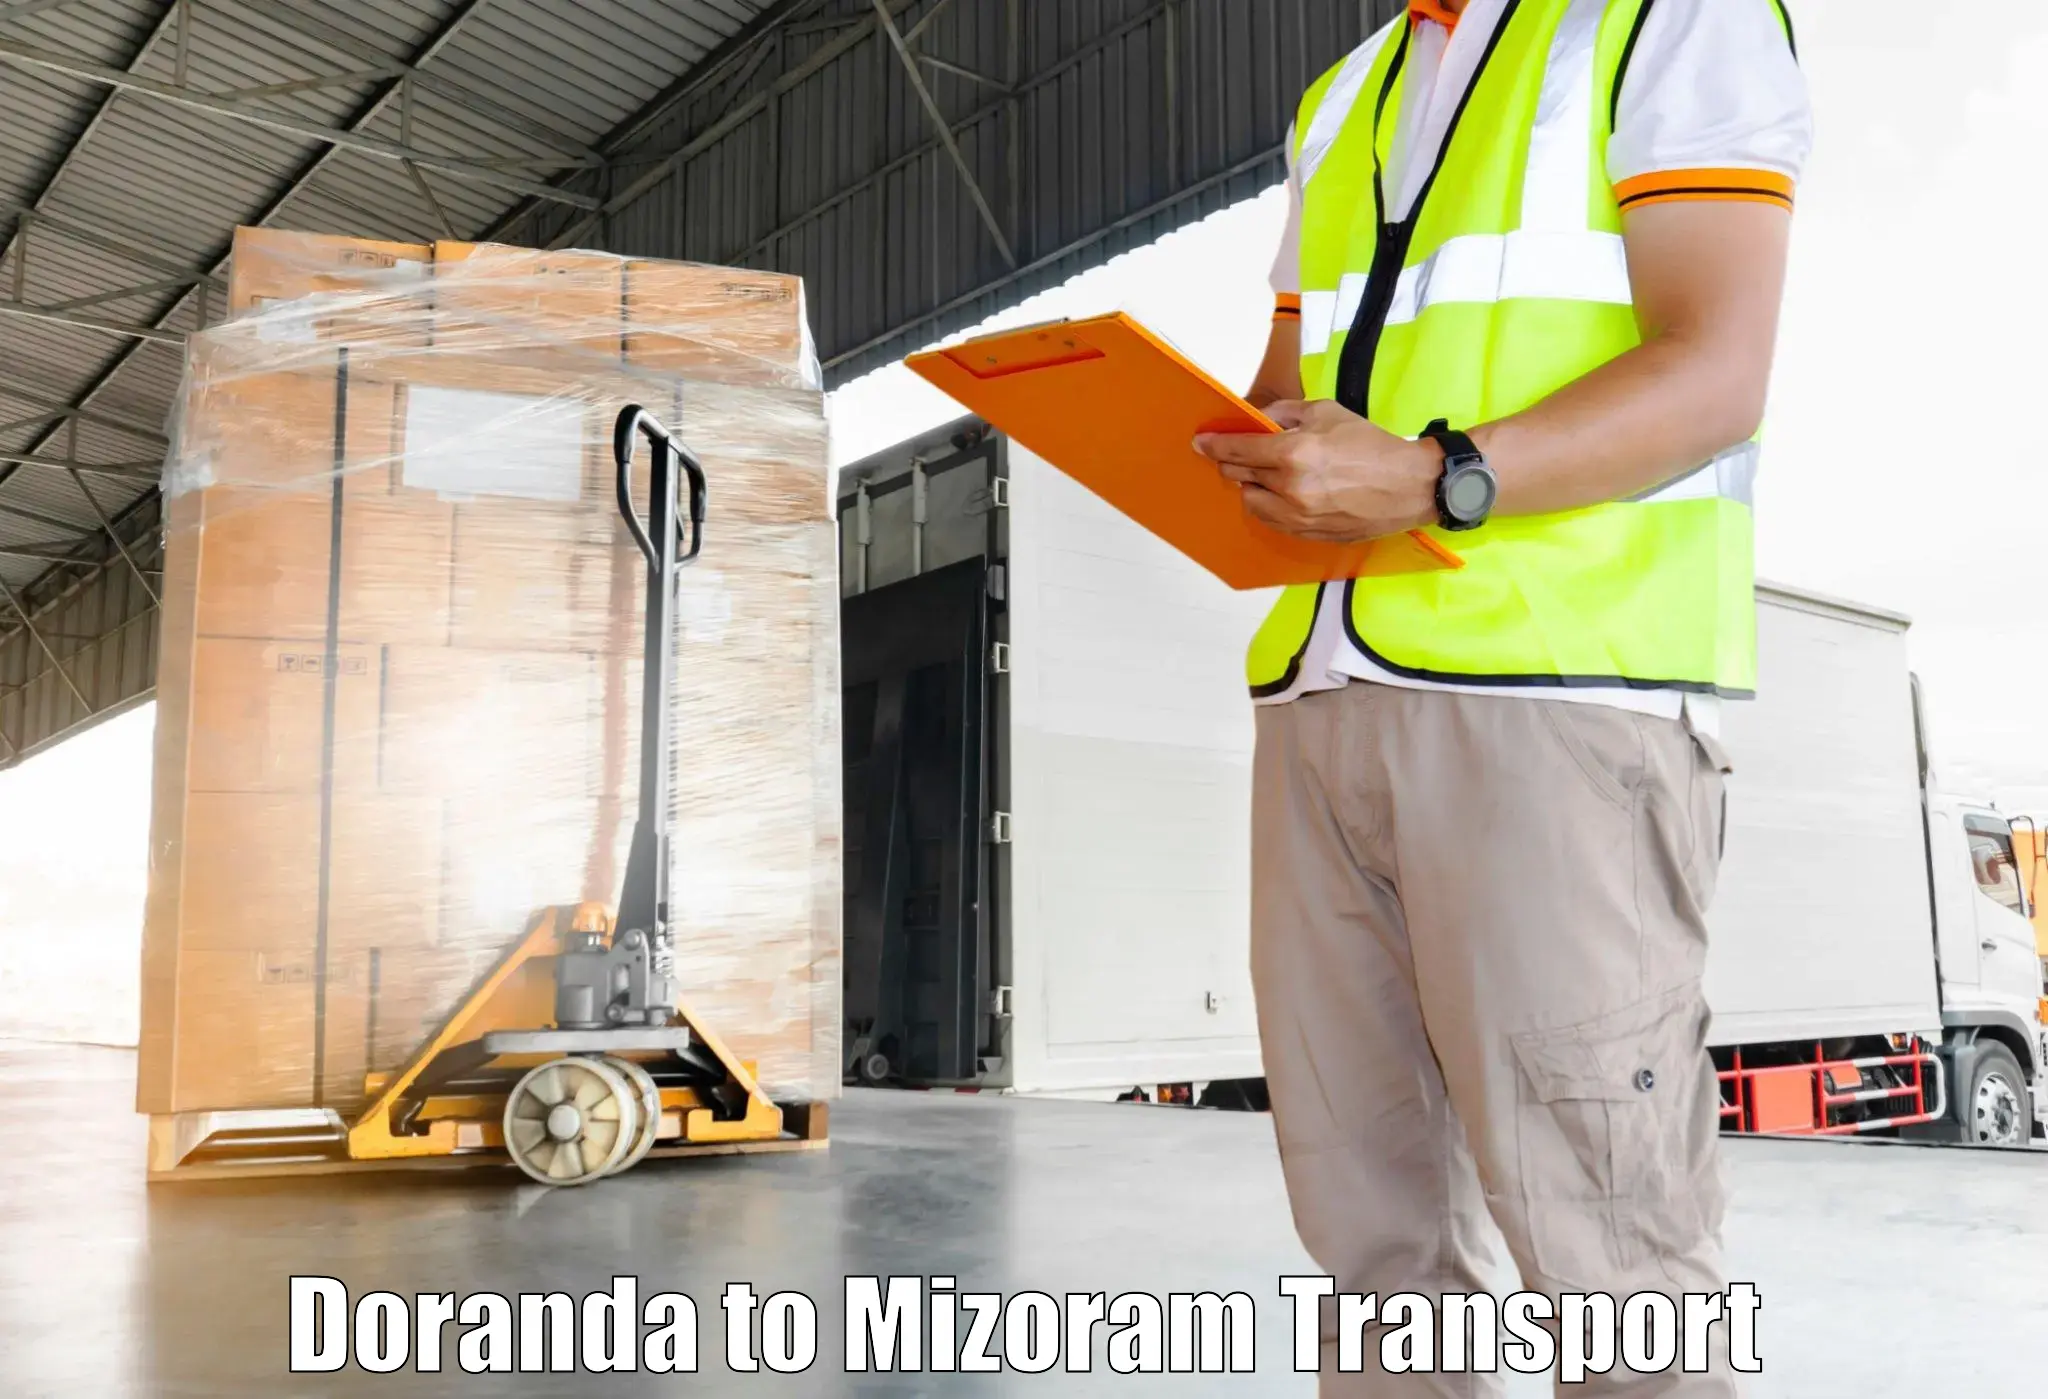 Air cargo transport services Doranda to Mizoram